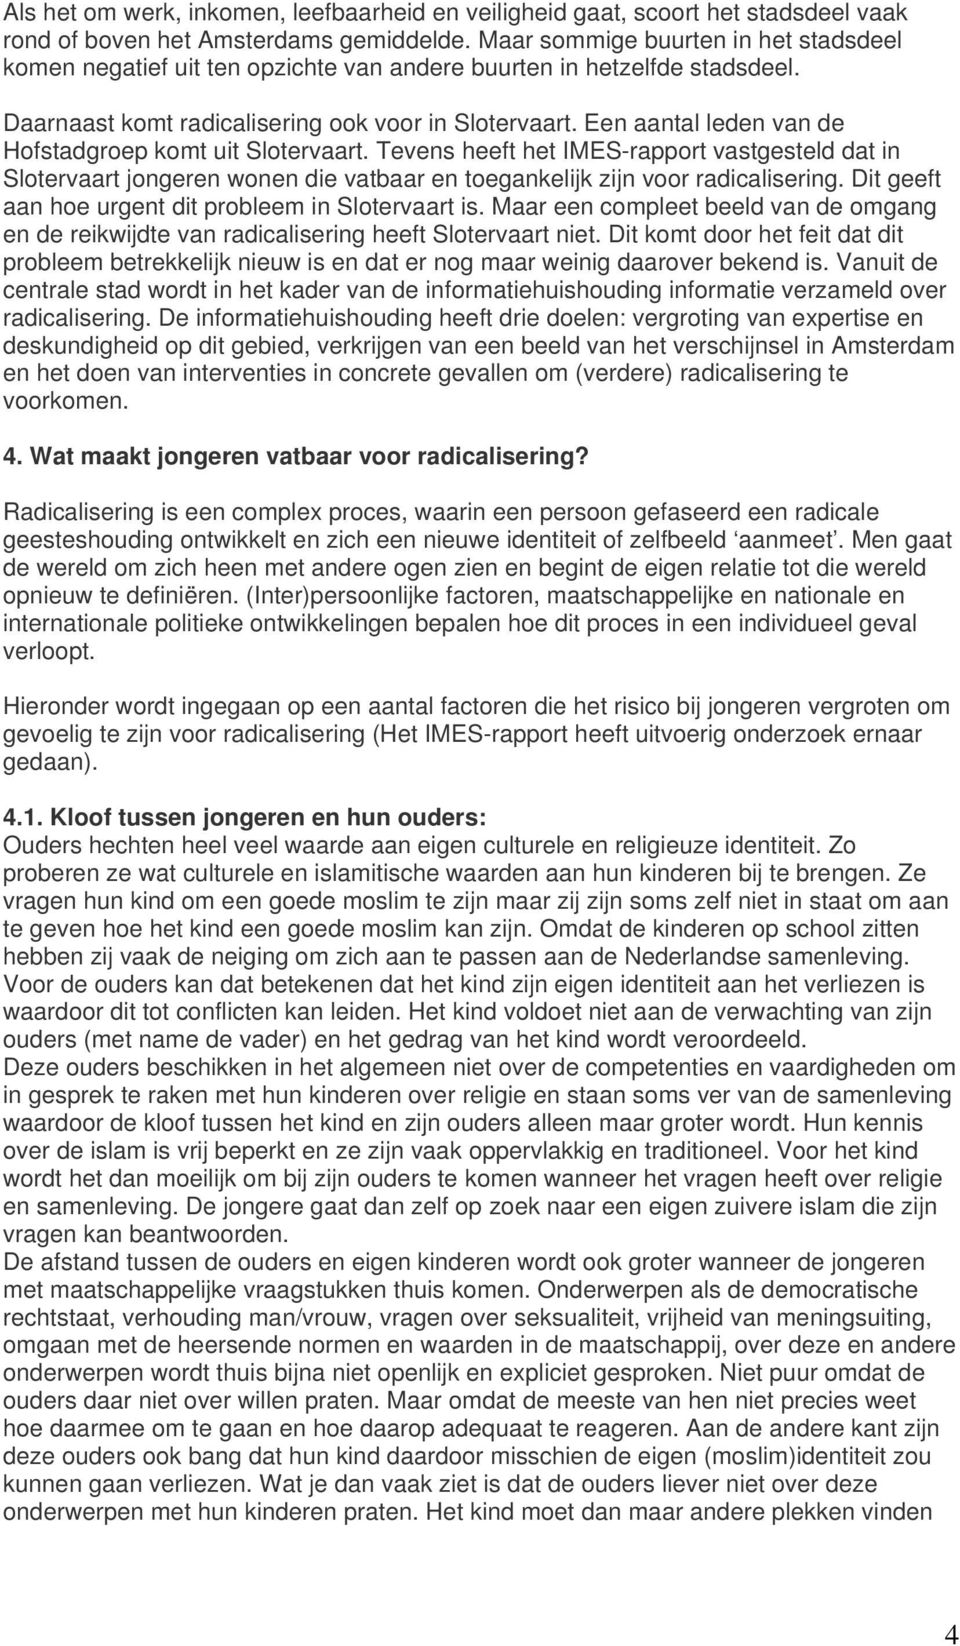 Een aantal leden van de Hofstadgroep komt uit Slotervaart. Tevens heeft het IMES-rapport vastgesteld dat in Slotervaart jongeren wonen die vatbaar en toegankelijk zijn voor radicalisering.